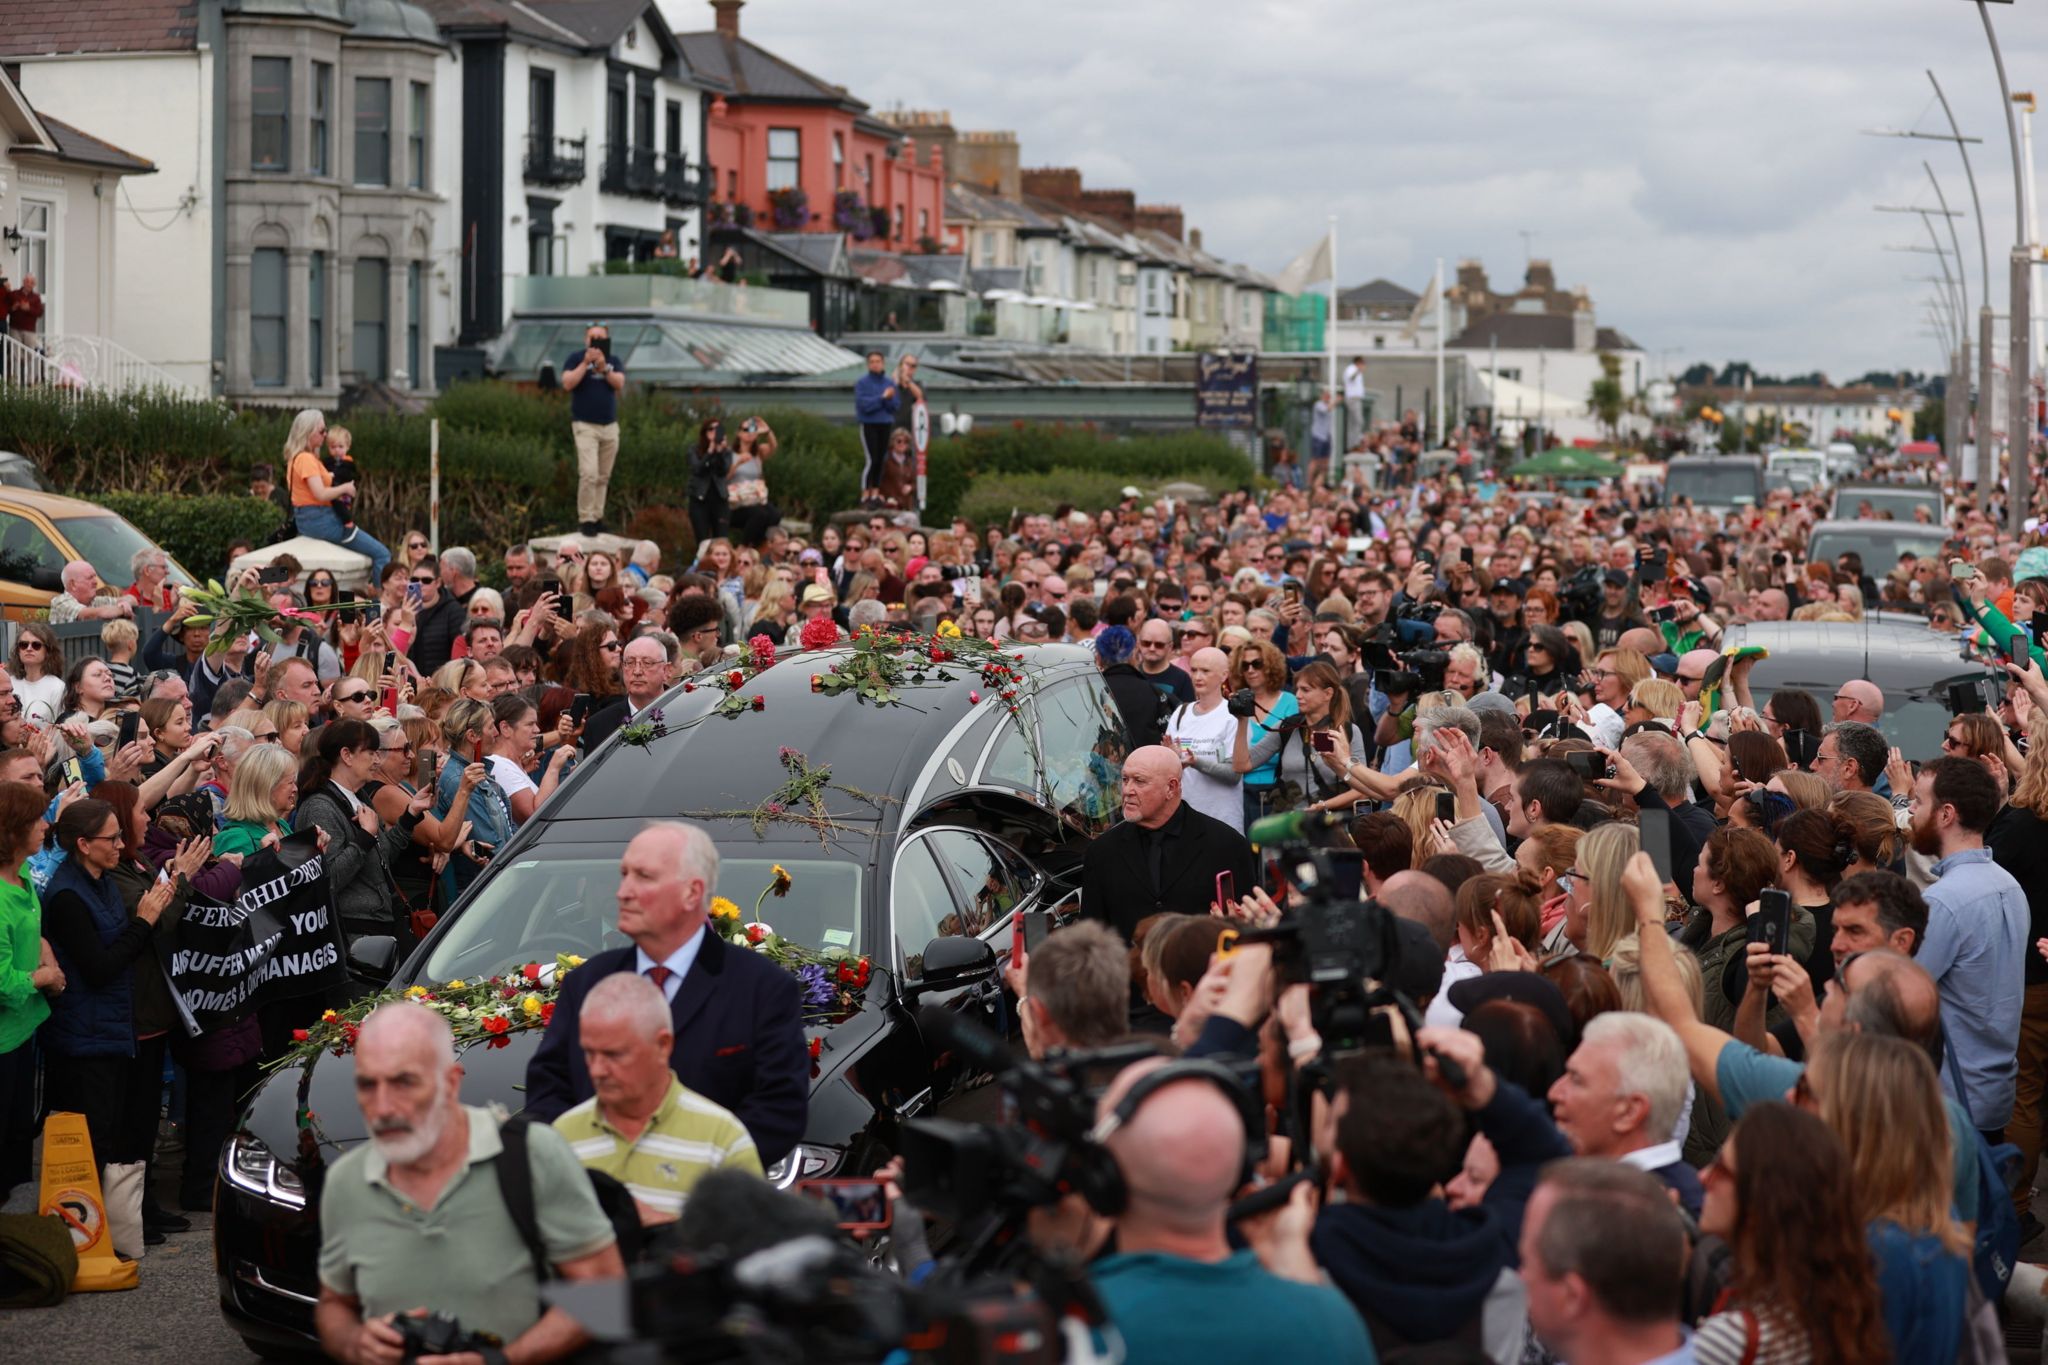 A hearse passes through a crowd